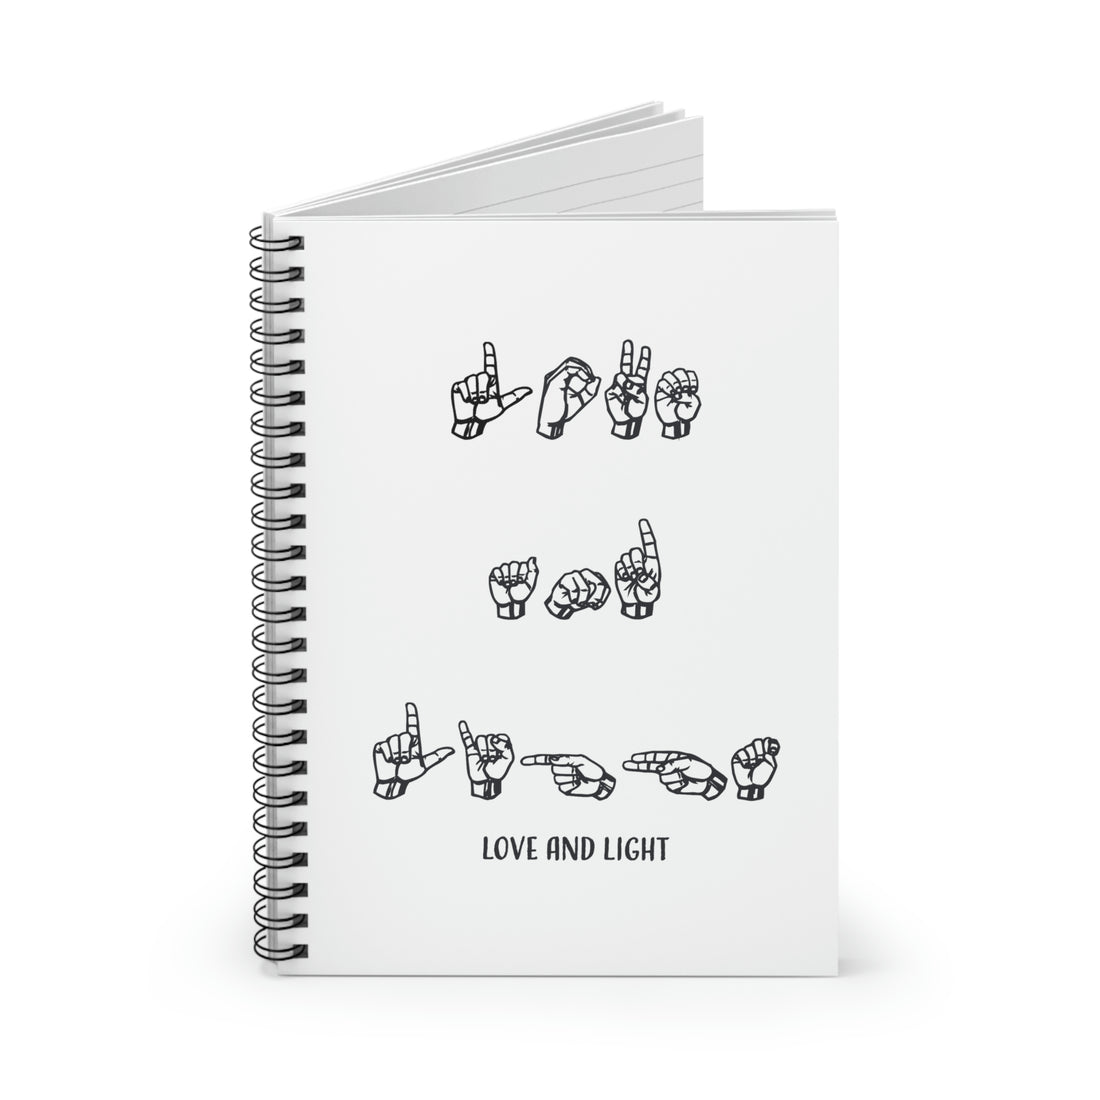 ASL - Love &amp; Light - Spiral Notebook - Ruled Line